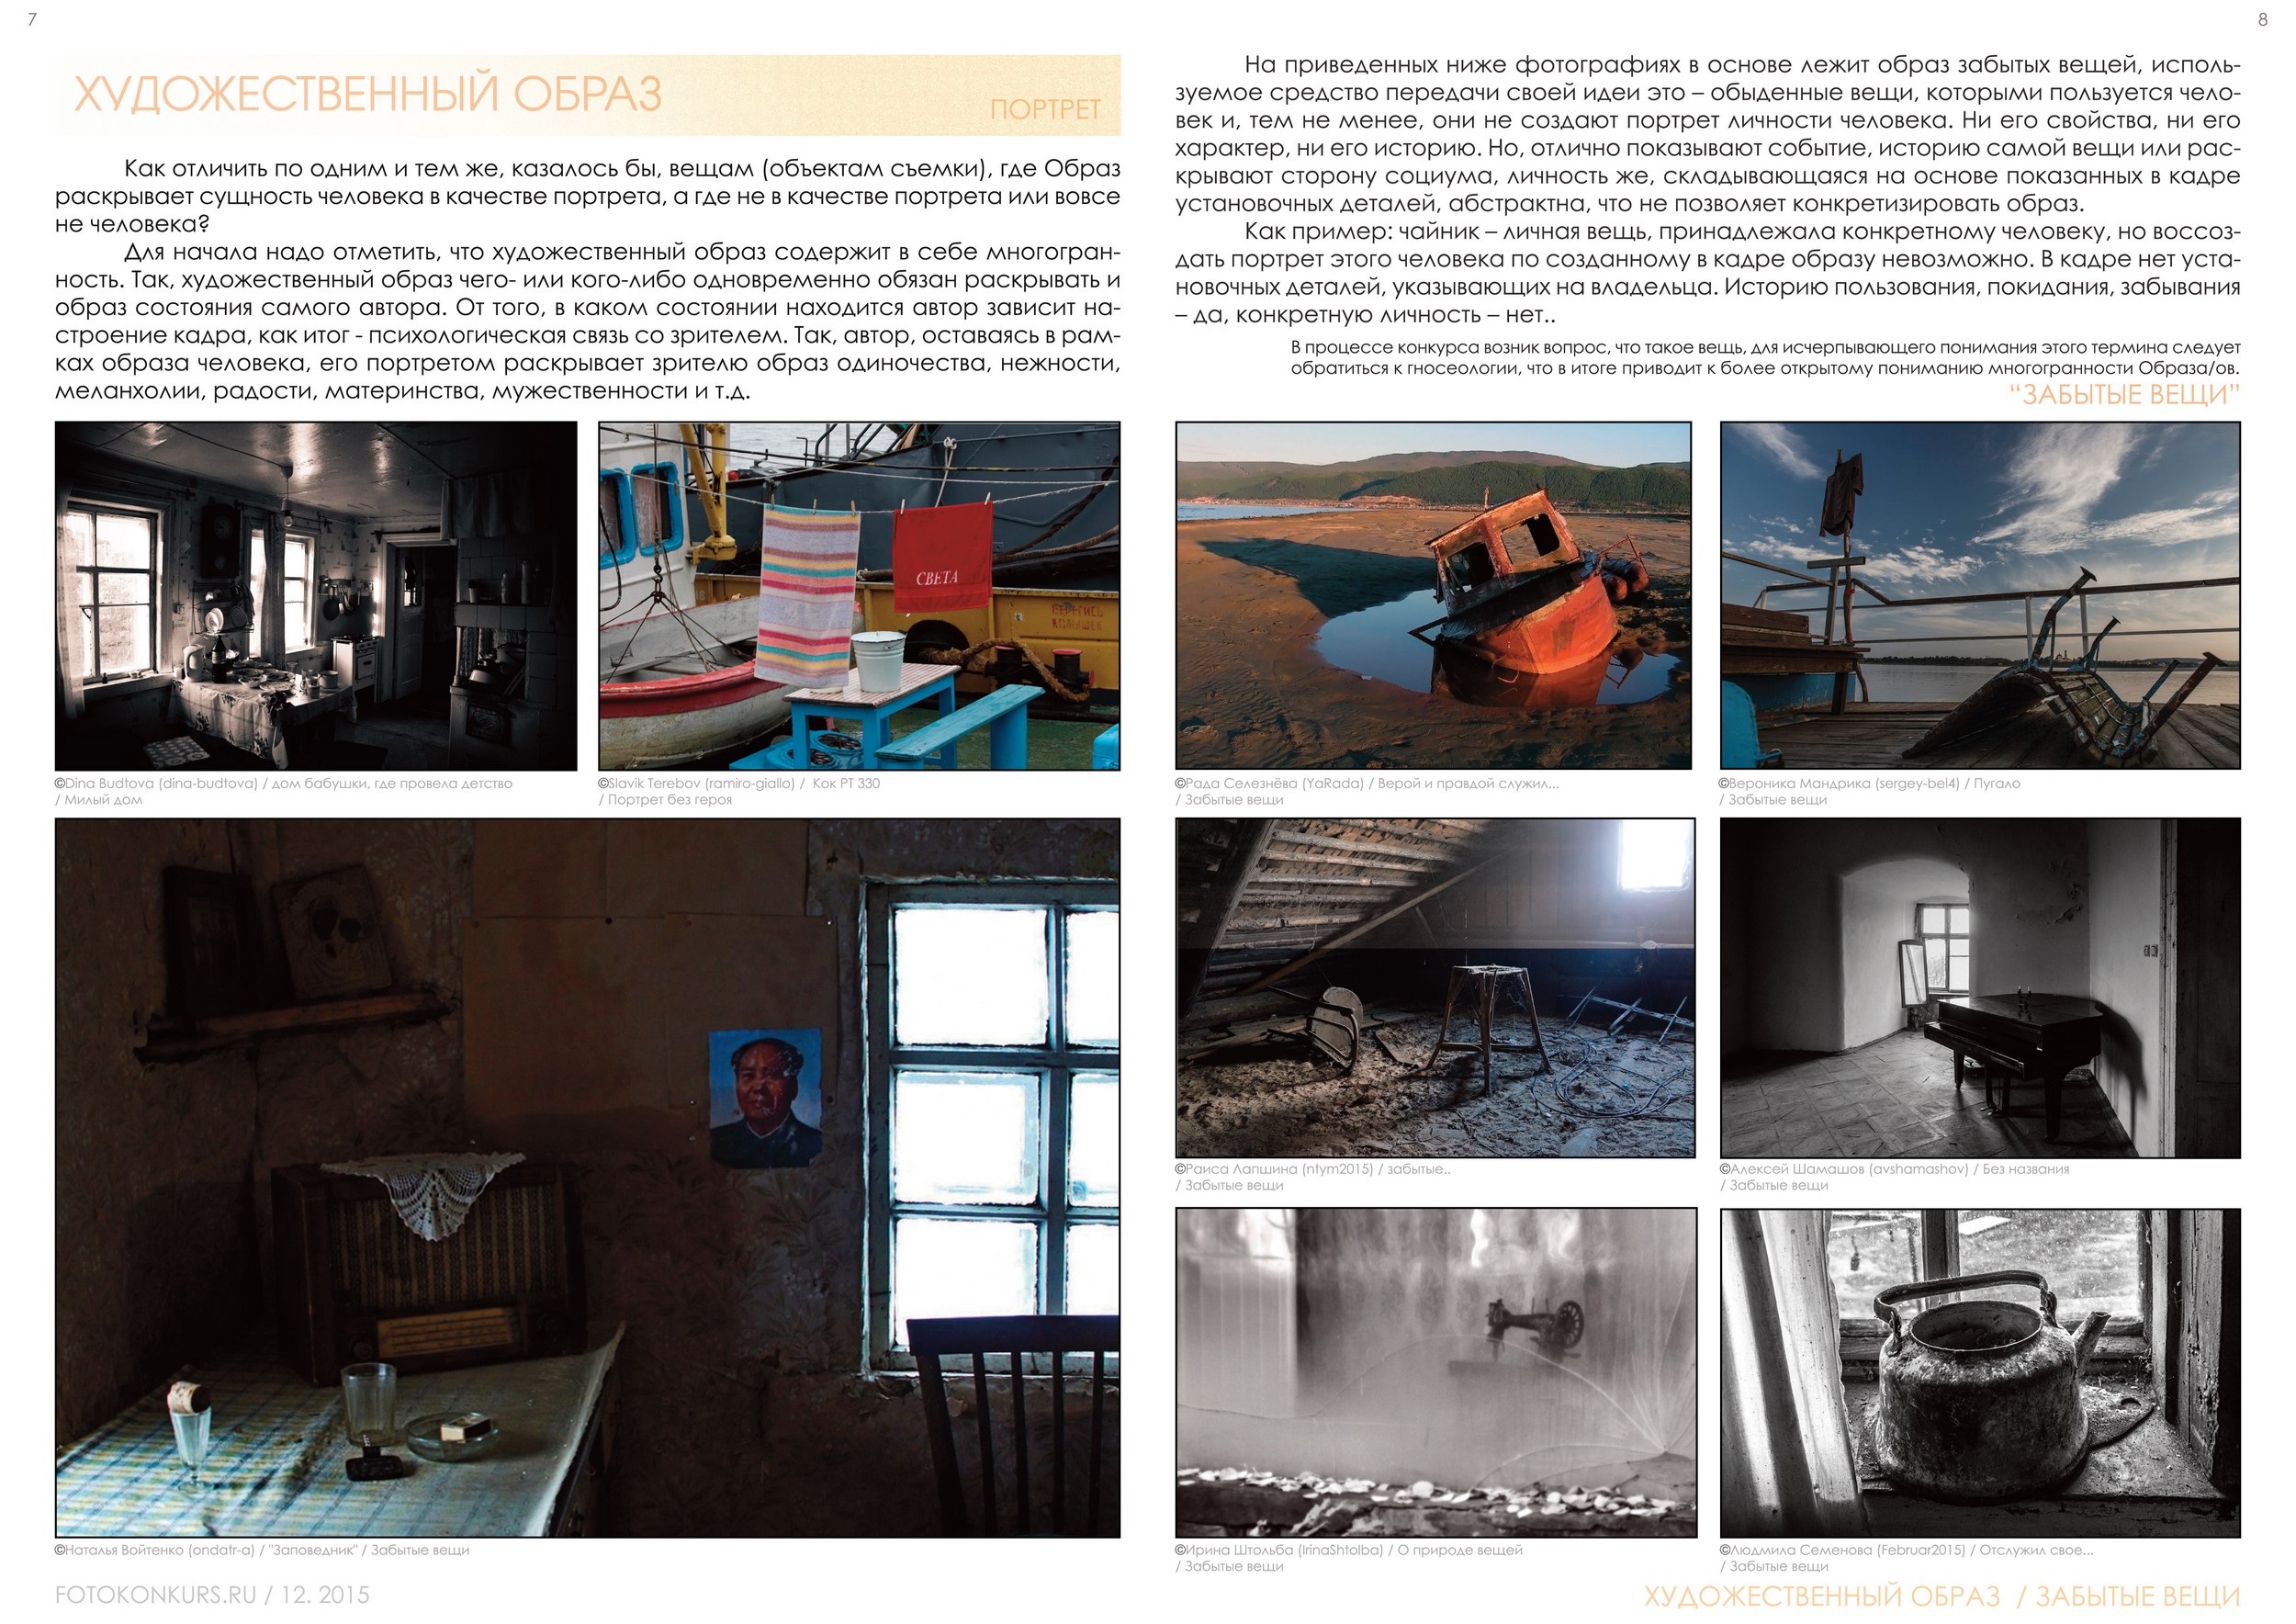 Журнал Фотоконкурс.ру, Выпуск 2, декабрь-2015, страница 7-8